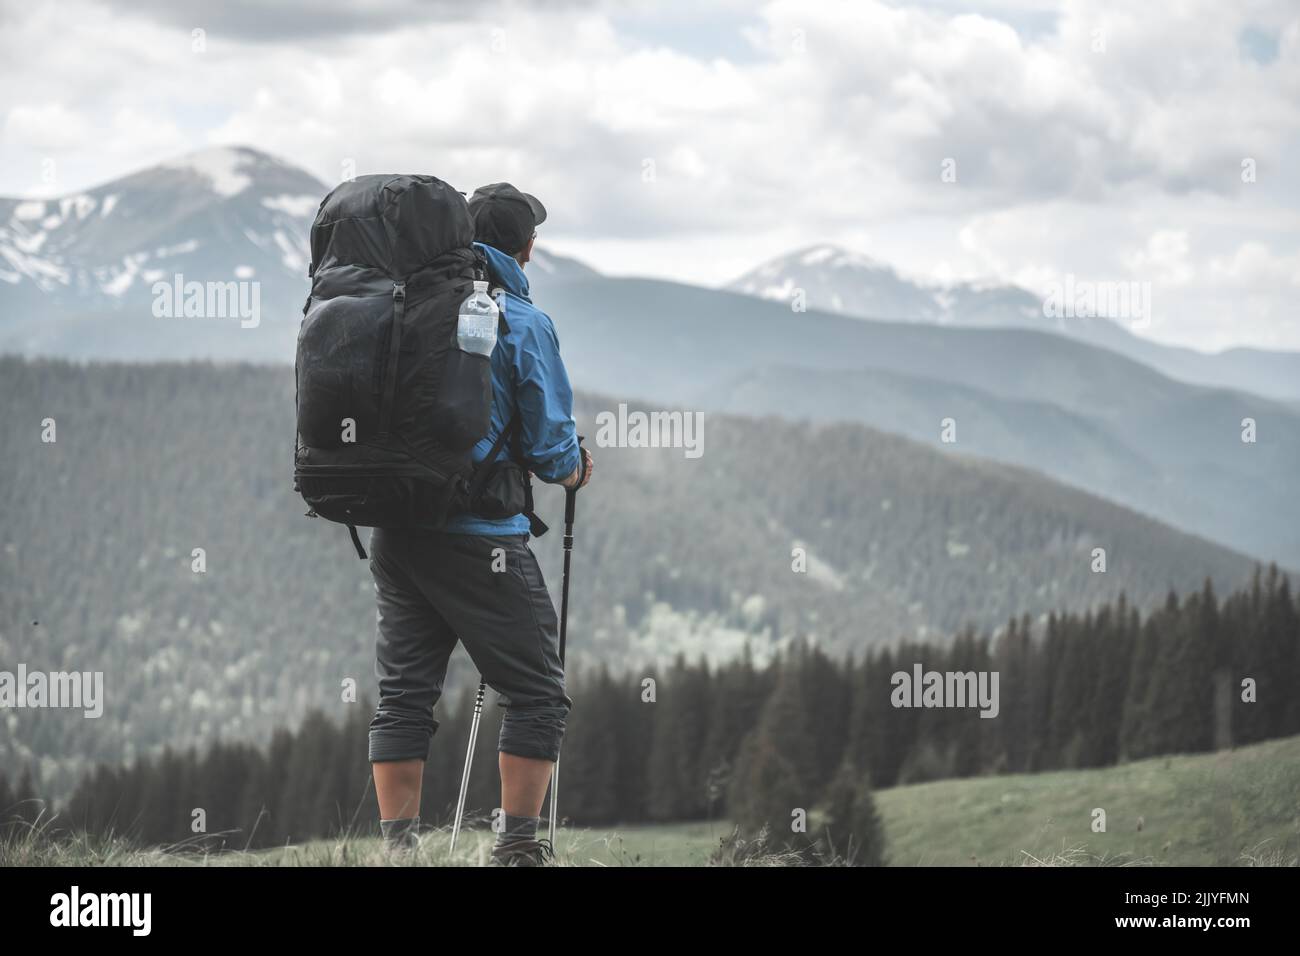 Un turista con mochila de senderismo en las montañas de primavera. Montañas nevadas al fondo. Fotografía de paisajes Foto de stock